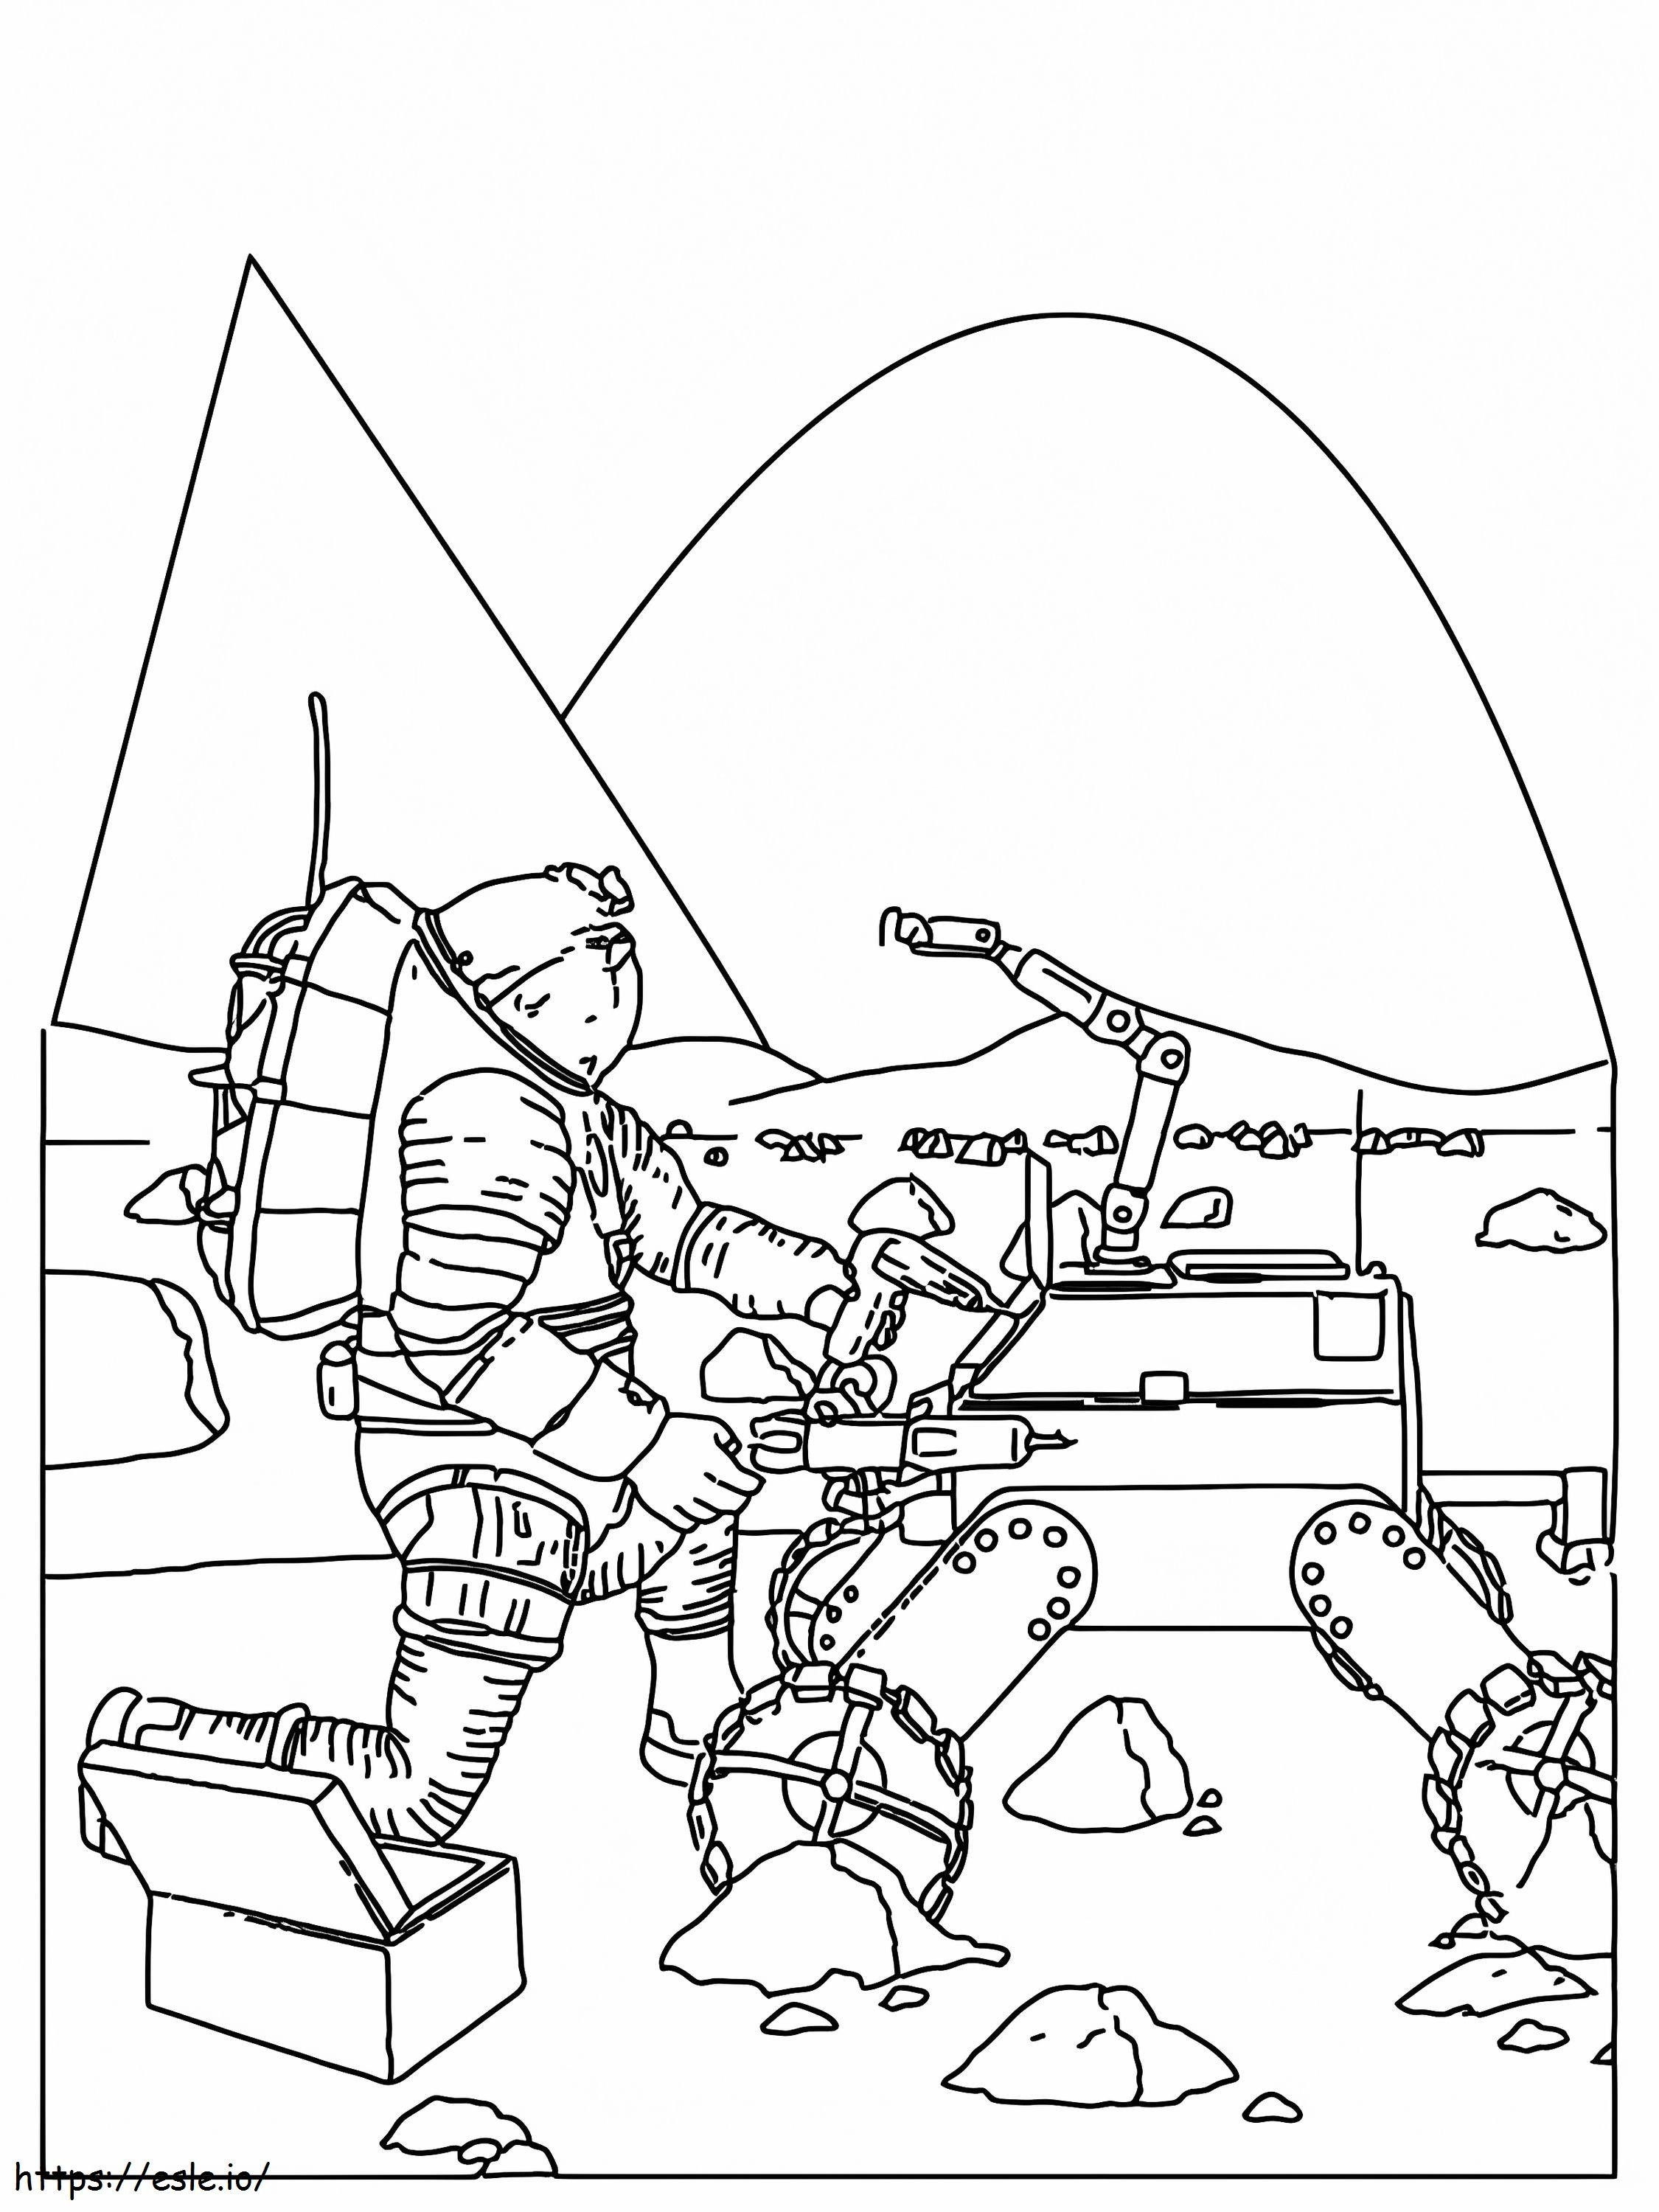 Astronauta de la Nasa arreglando el rover para colorear